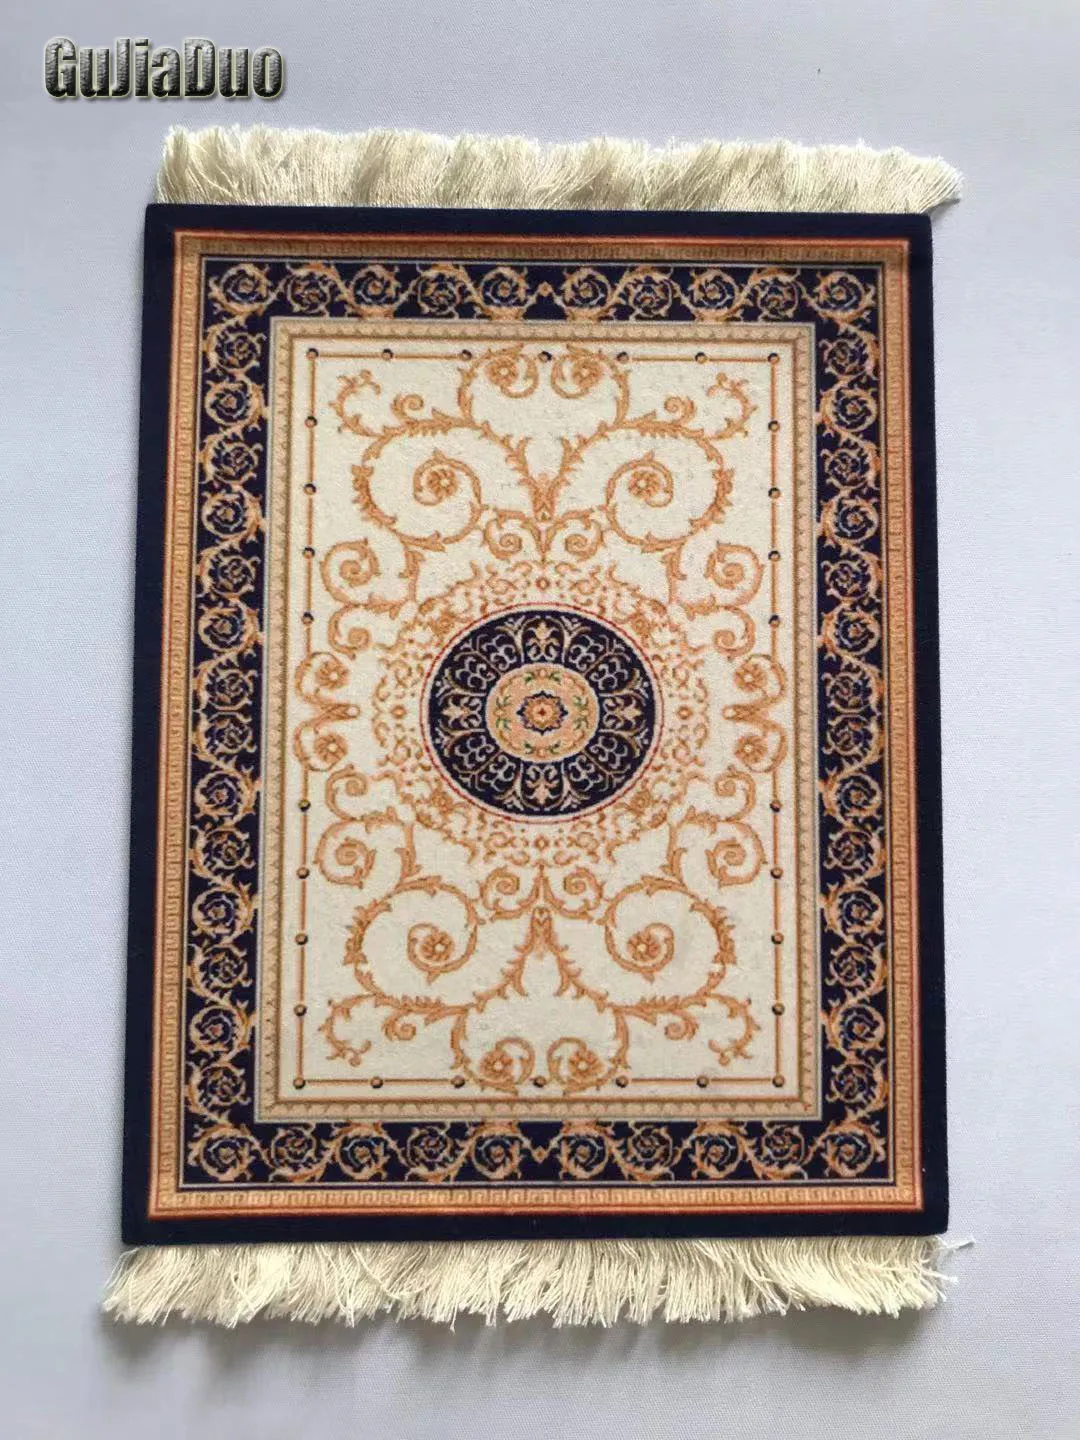 Фото GuJiaDuo 22x18 см персидский коврик для компьютерной мыши подставка с кисточкой Модный